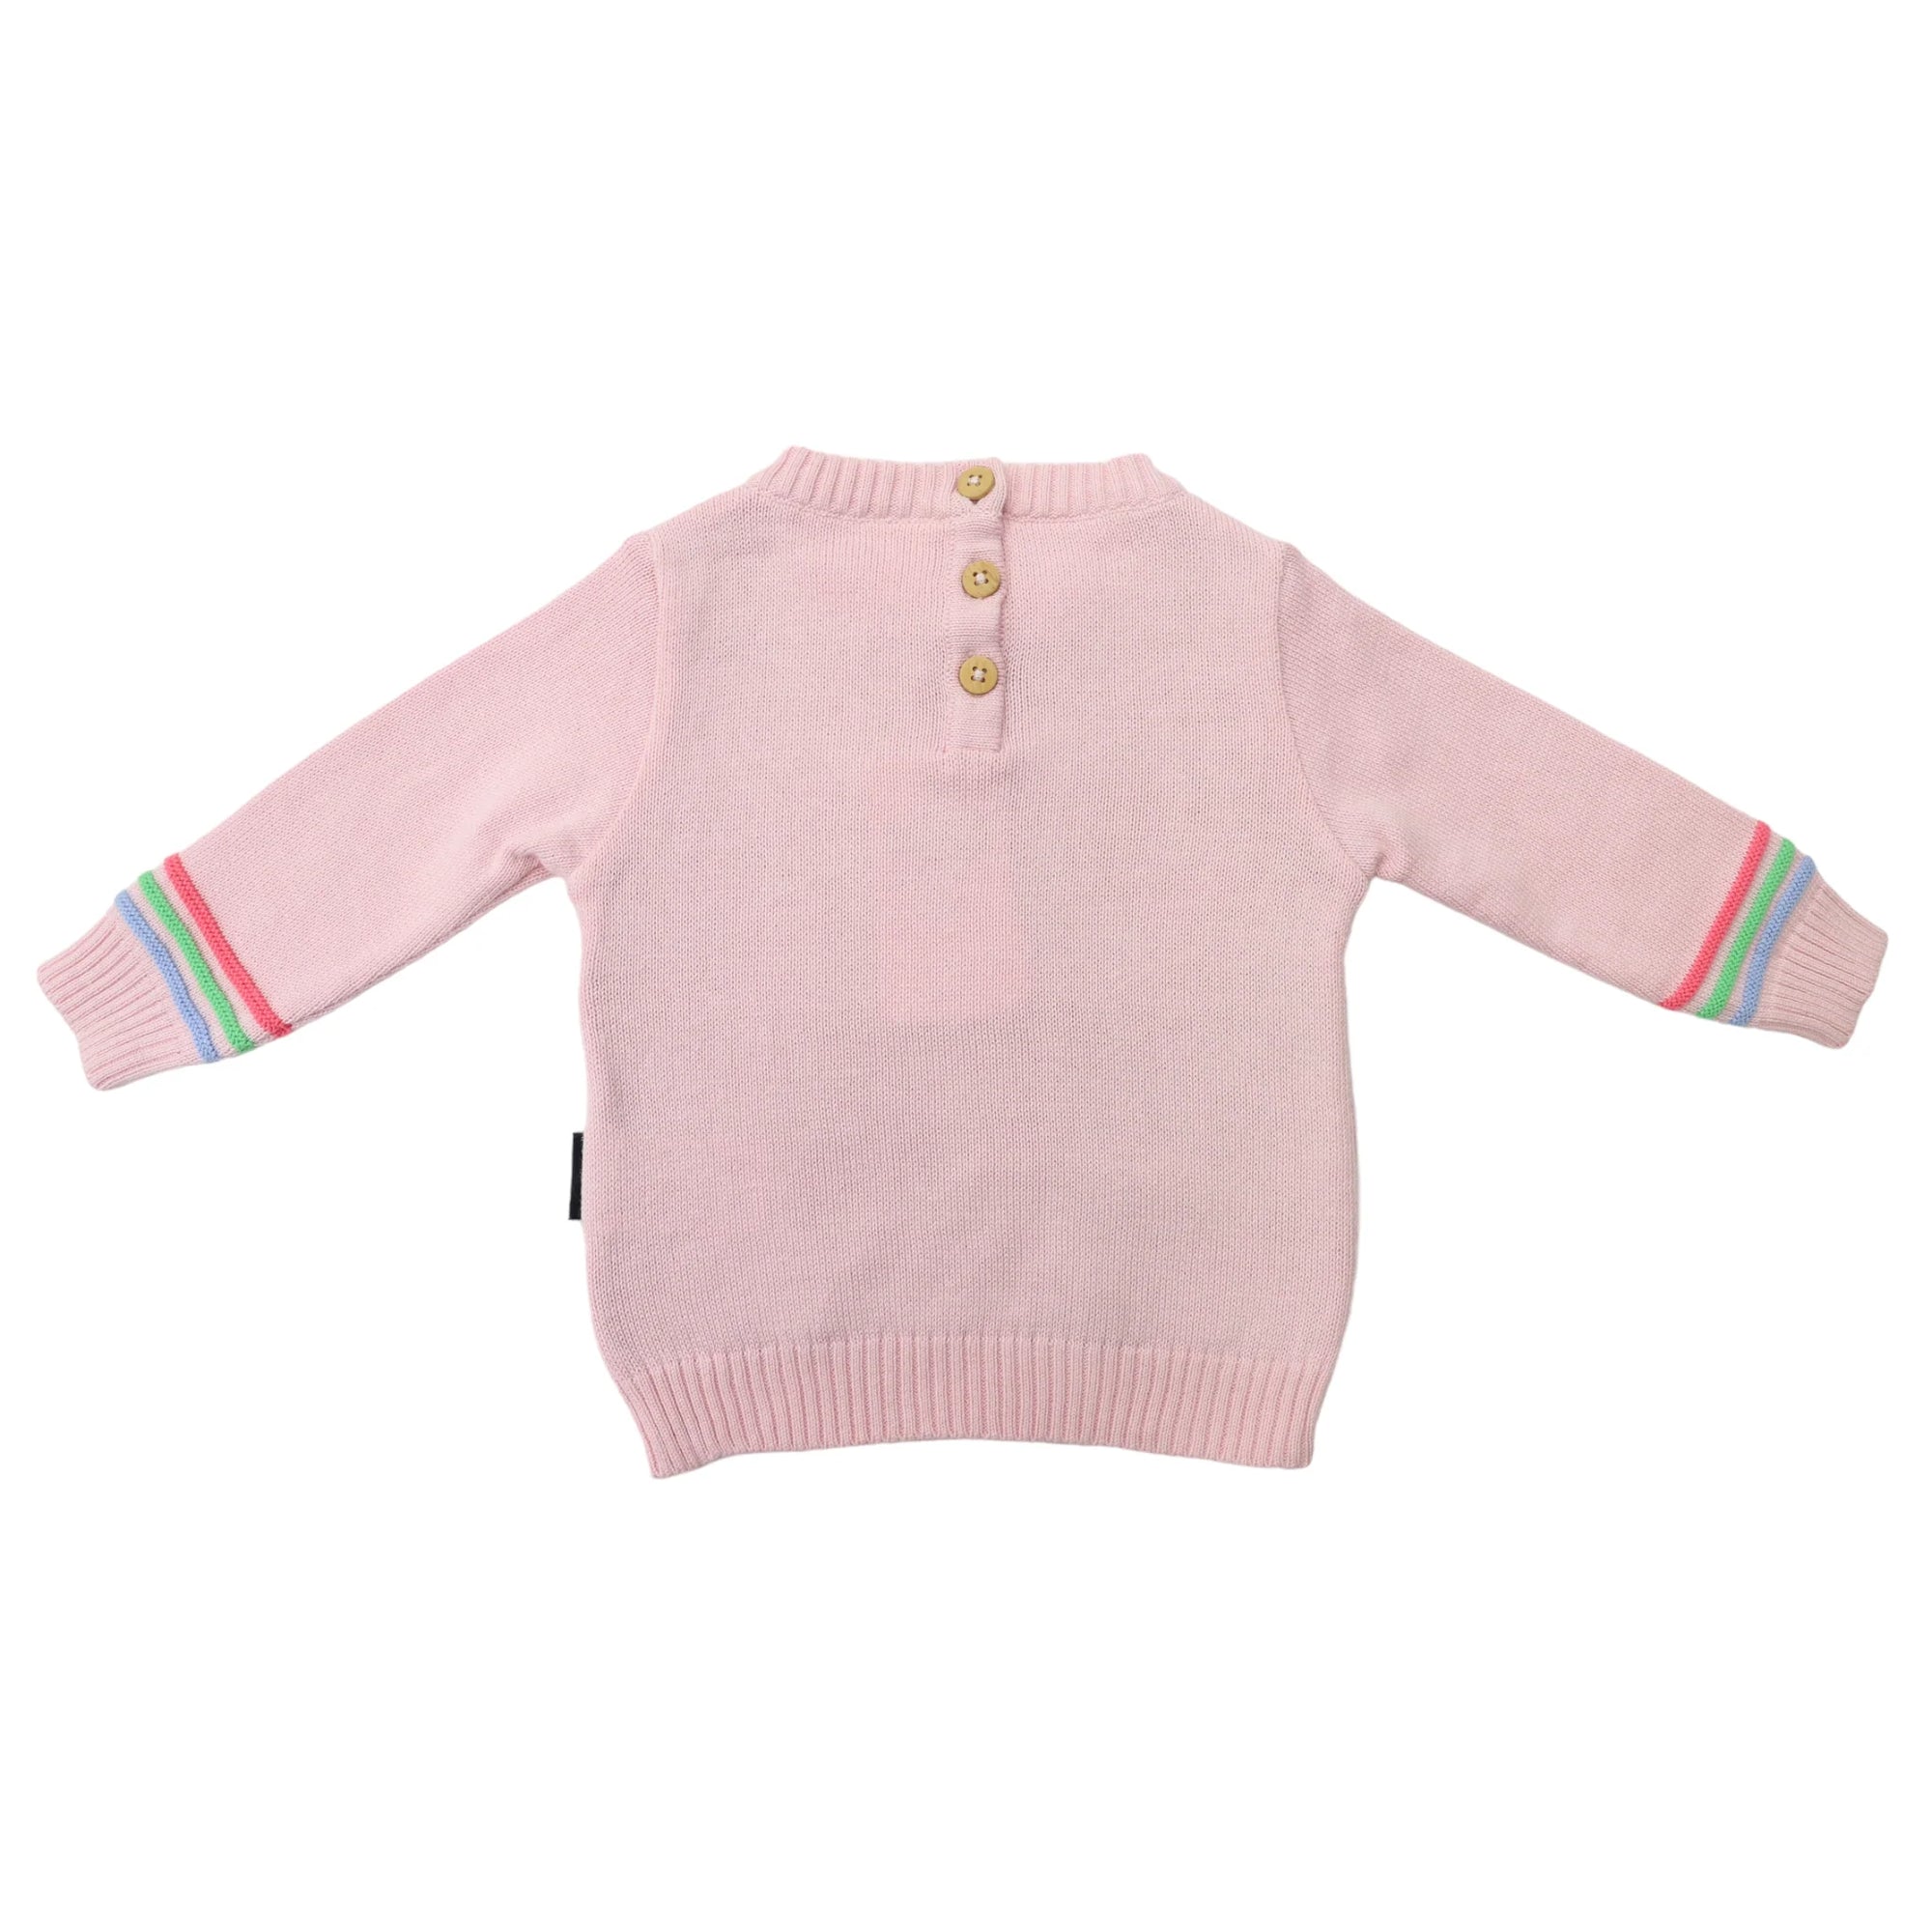 Korango Rainbow Pattern Knit Sweater - Fairytale Pink